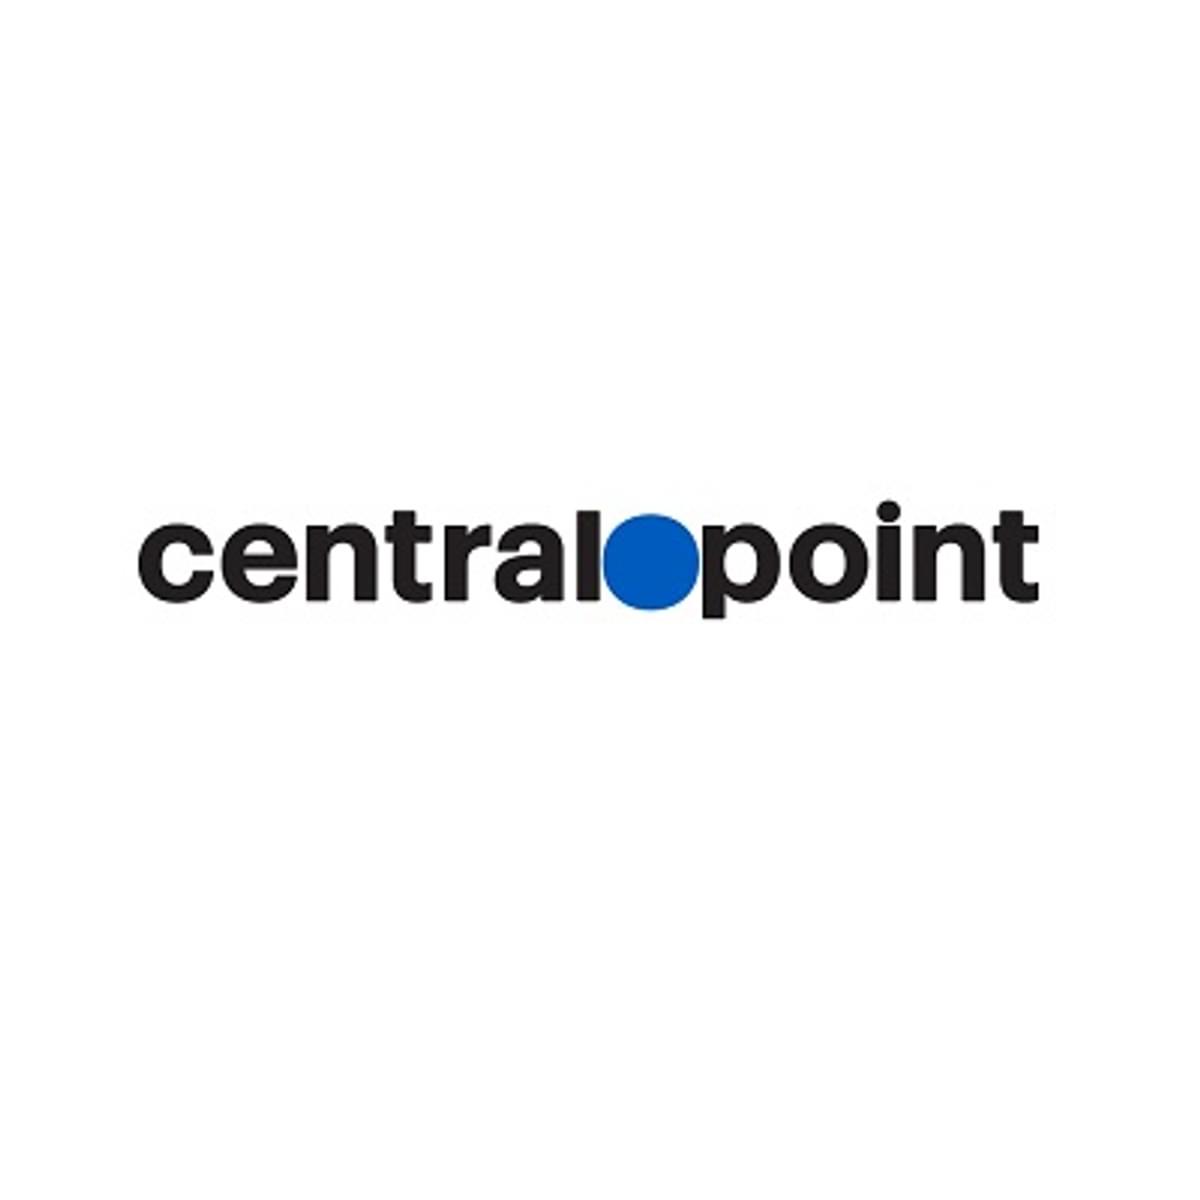 Centralpoint wint aanbesteding gemeente De Fryske Marren image